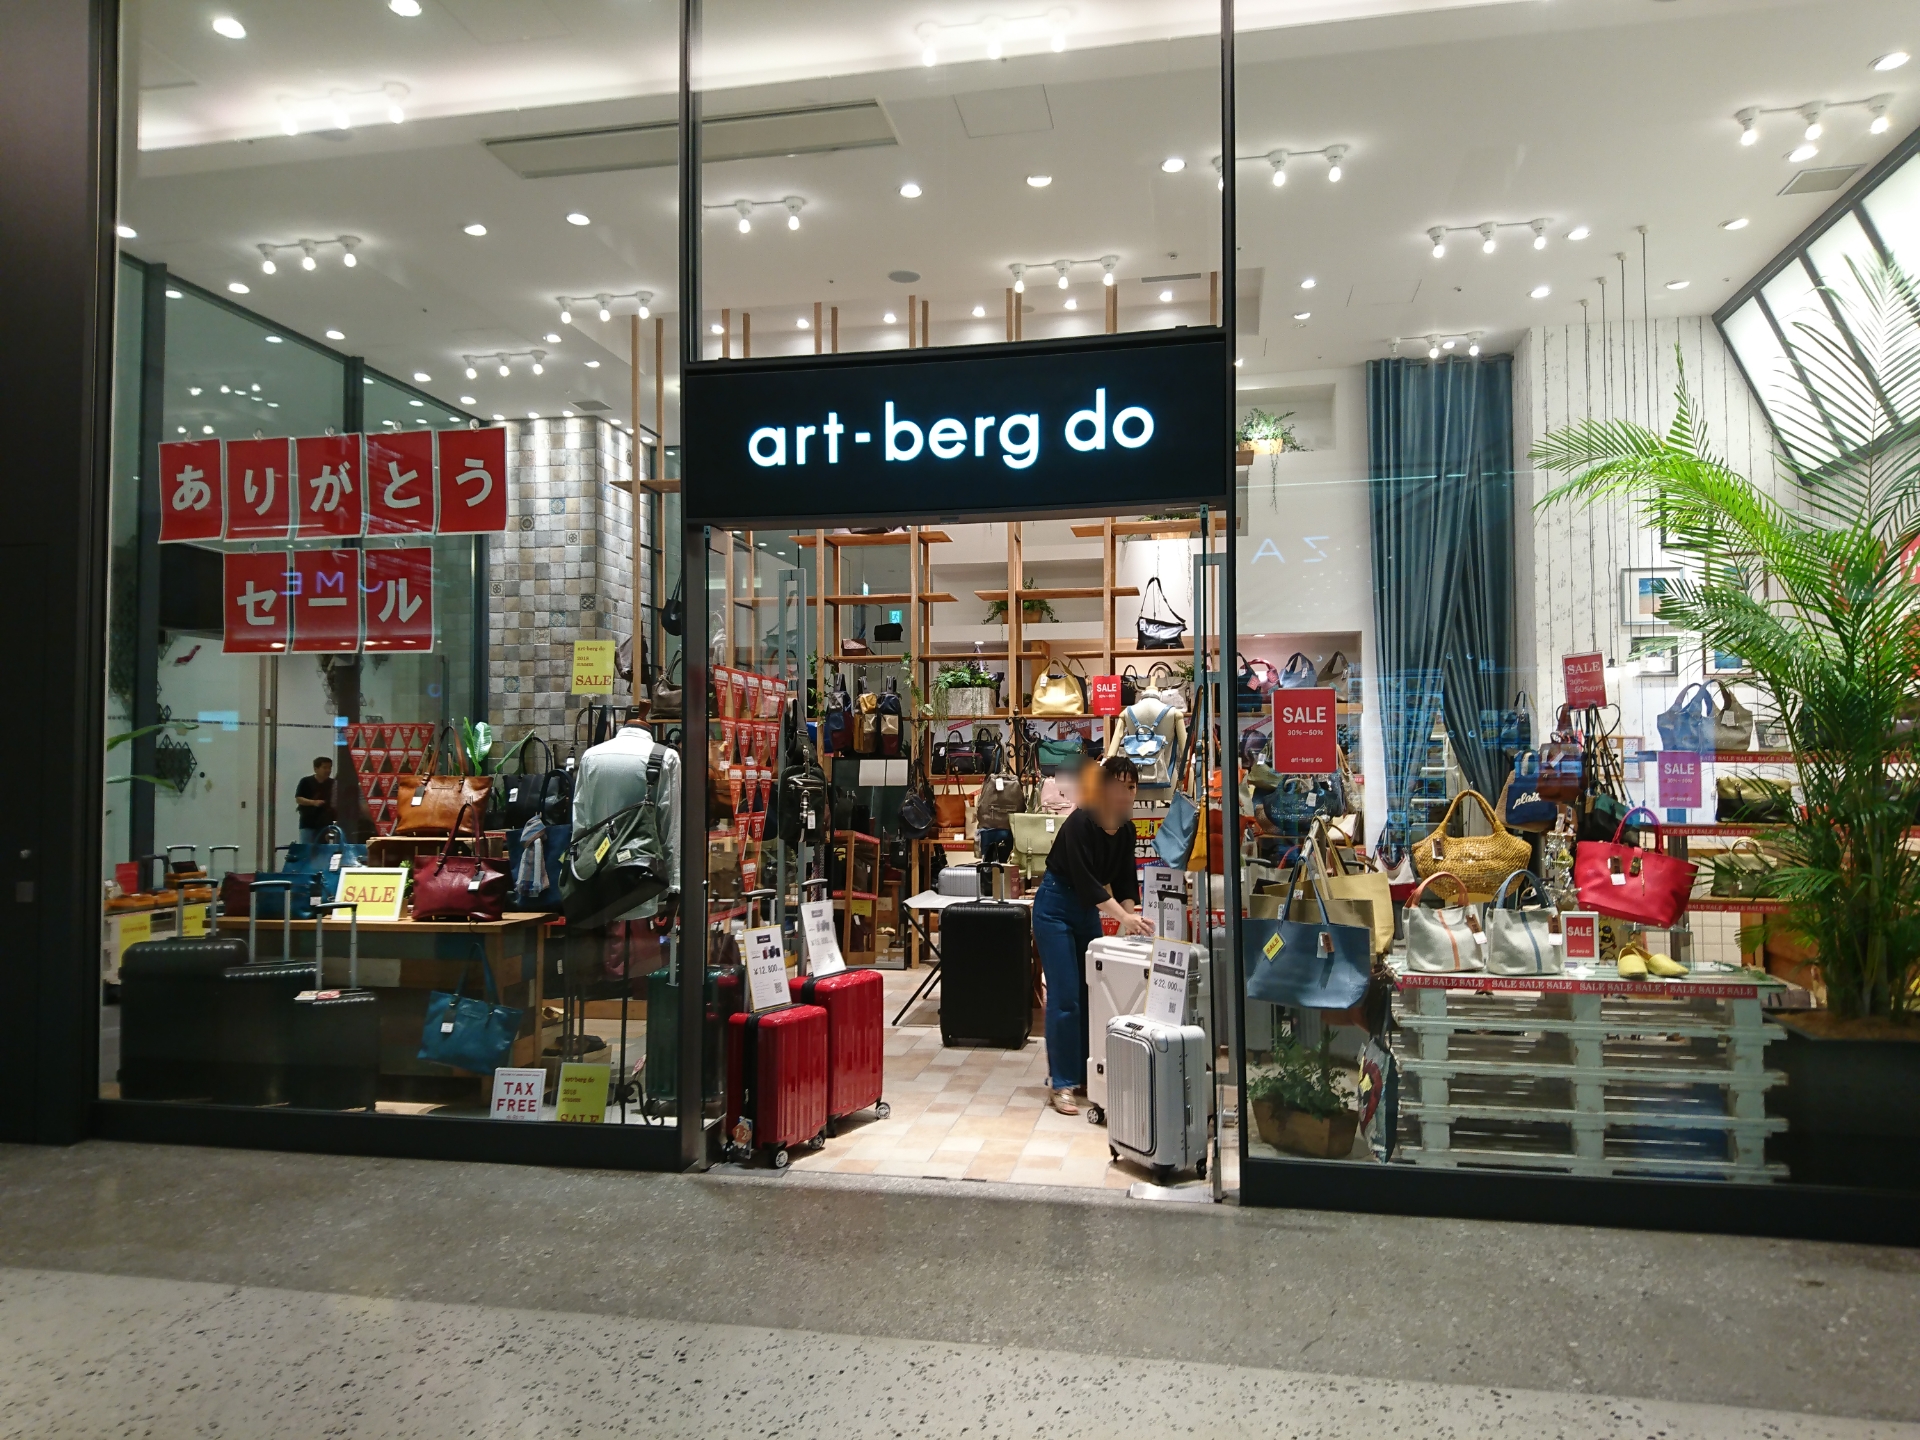 グランフロント大阪北館の Art Berg Do が閉店するようです 7 31 大阪キタじゃーなる